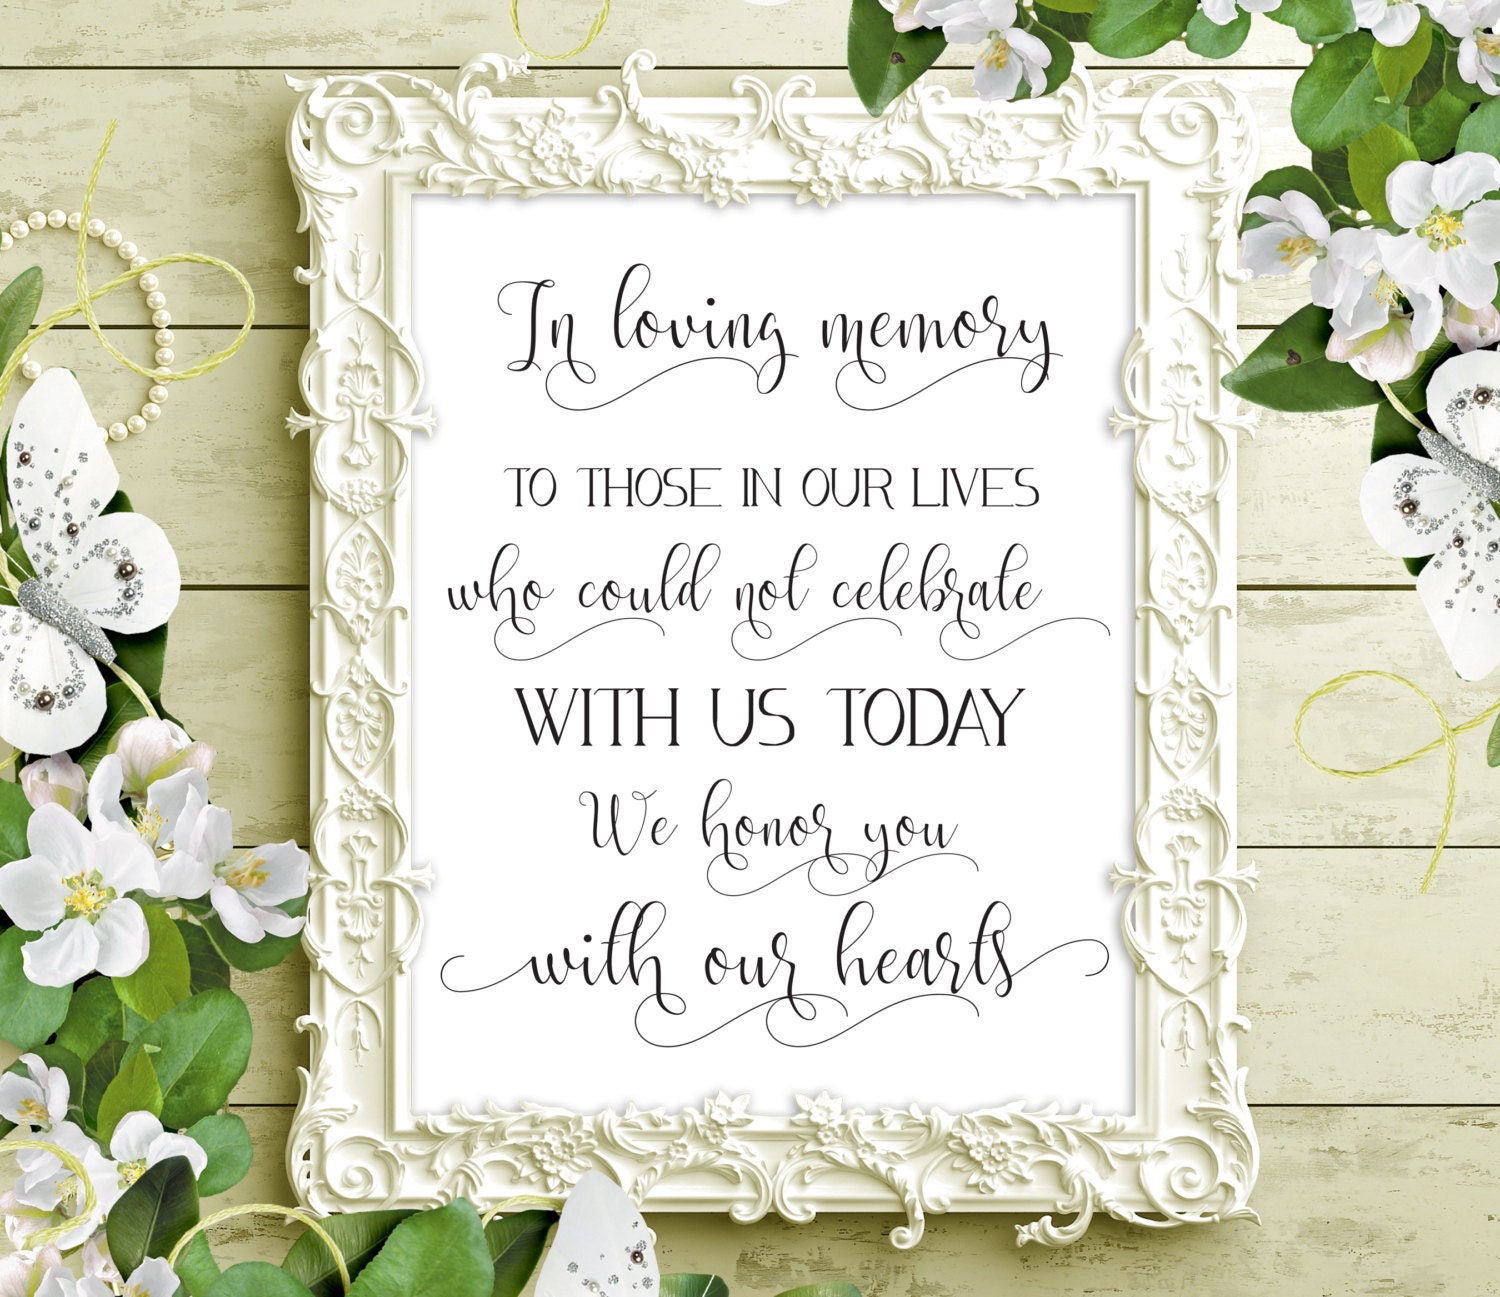 in-loving-memory-printable-wedding-memorial-table-sign-memory-sign